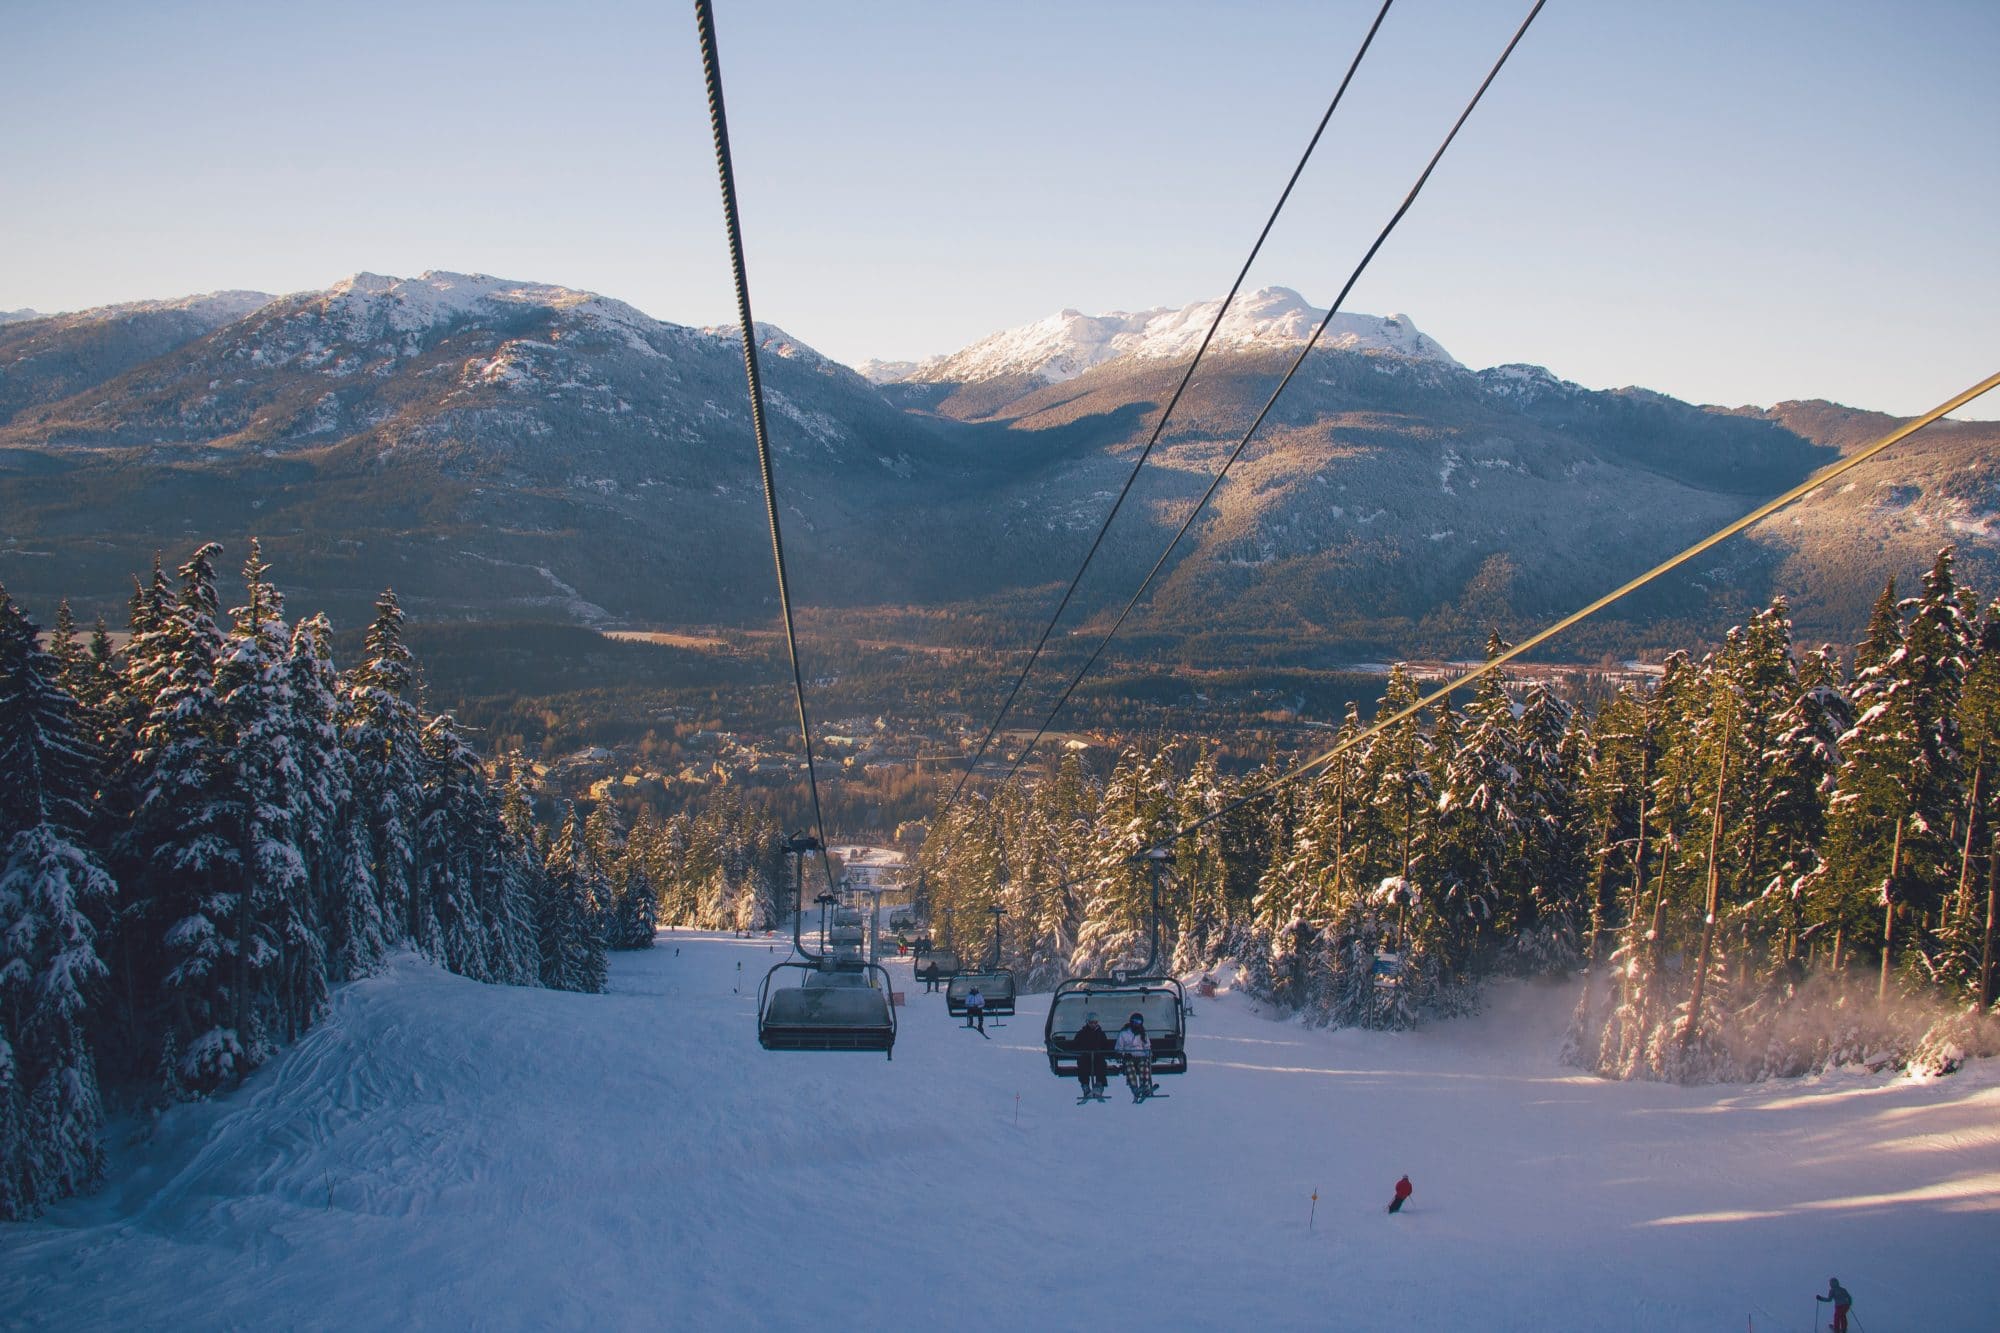 In Andorra, work visas help ski resorts get the seasonal workers they need.